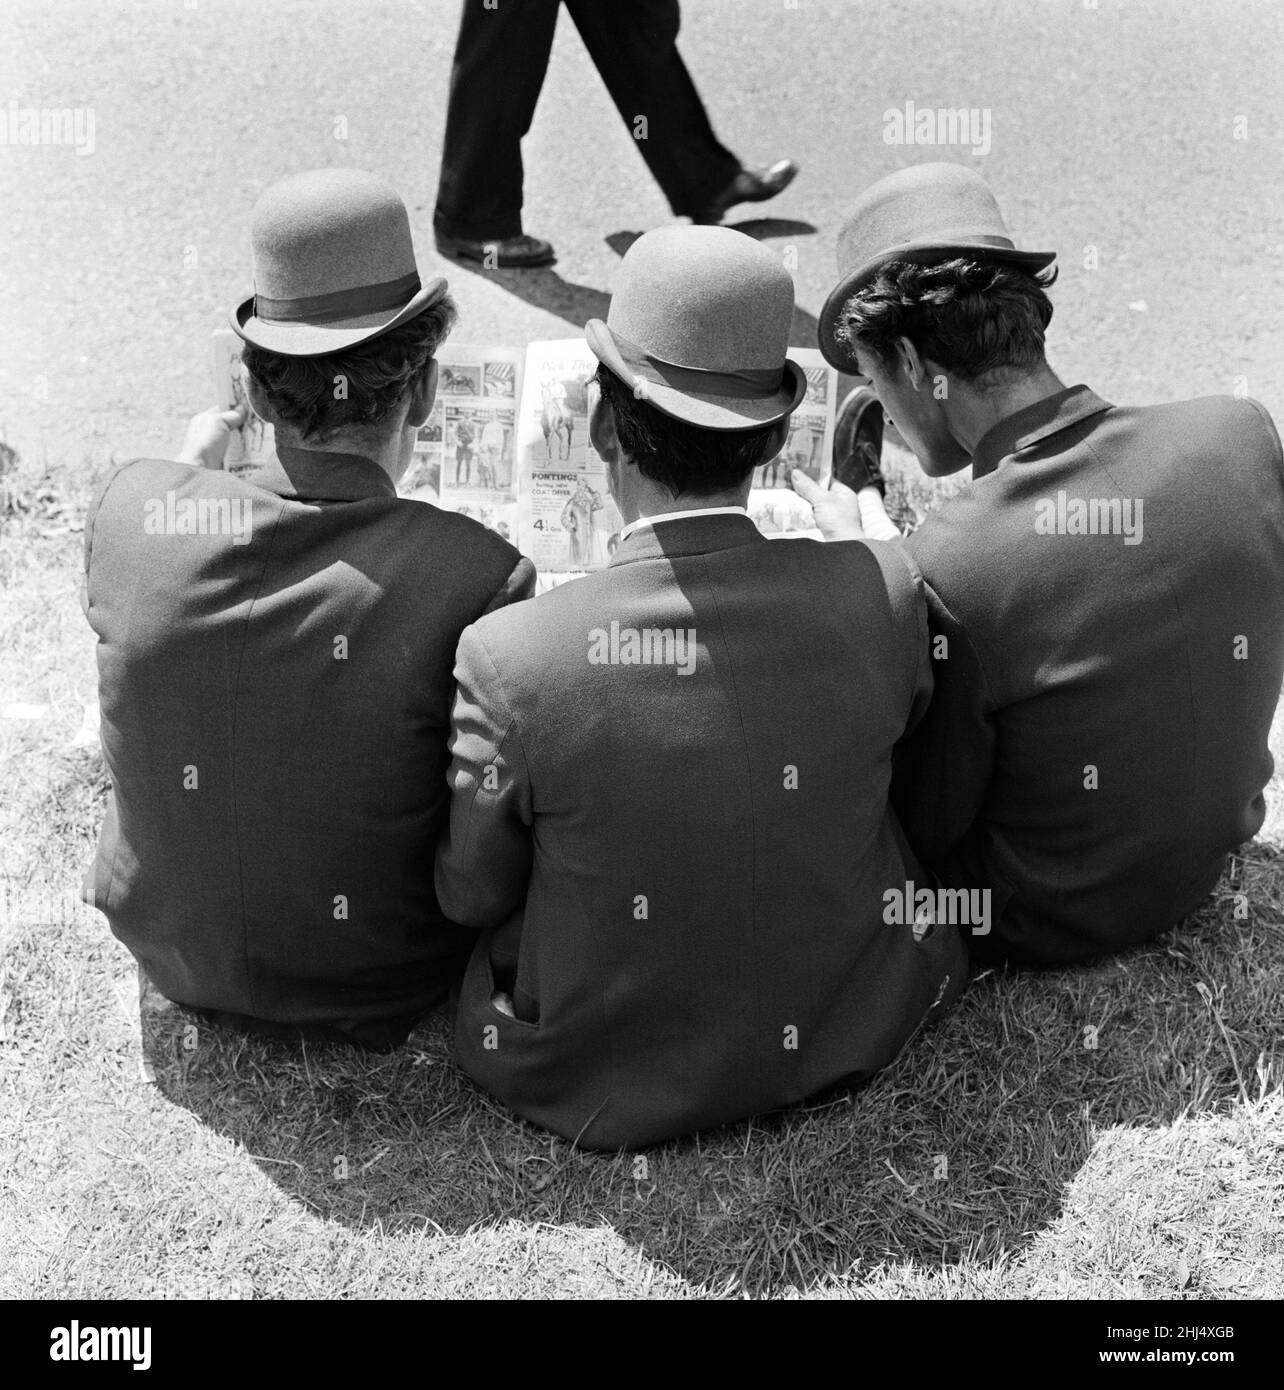 Derby Day à Epsom.Sur la photo, trois lads de Newmarket assis sur la forme d'étude de l'herbe.Tous portent des chapeaux qu'ils décrivent comme des « hariteuses dures », ils sont semblables aux baleines mais ont une visière courbée.3rd juin 1959. Banque D'Images